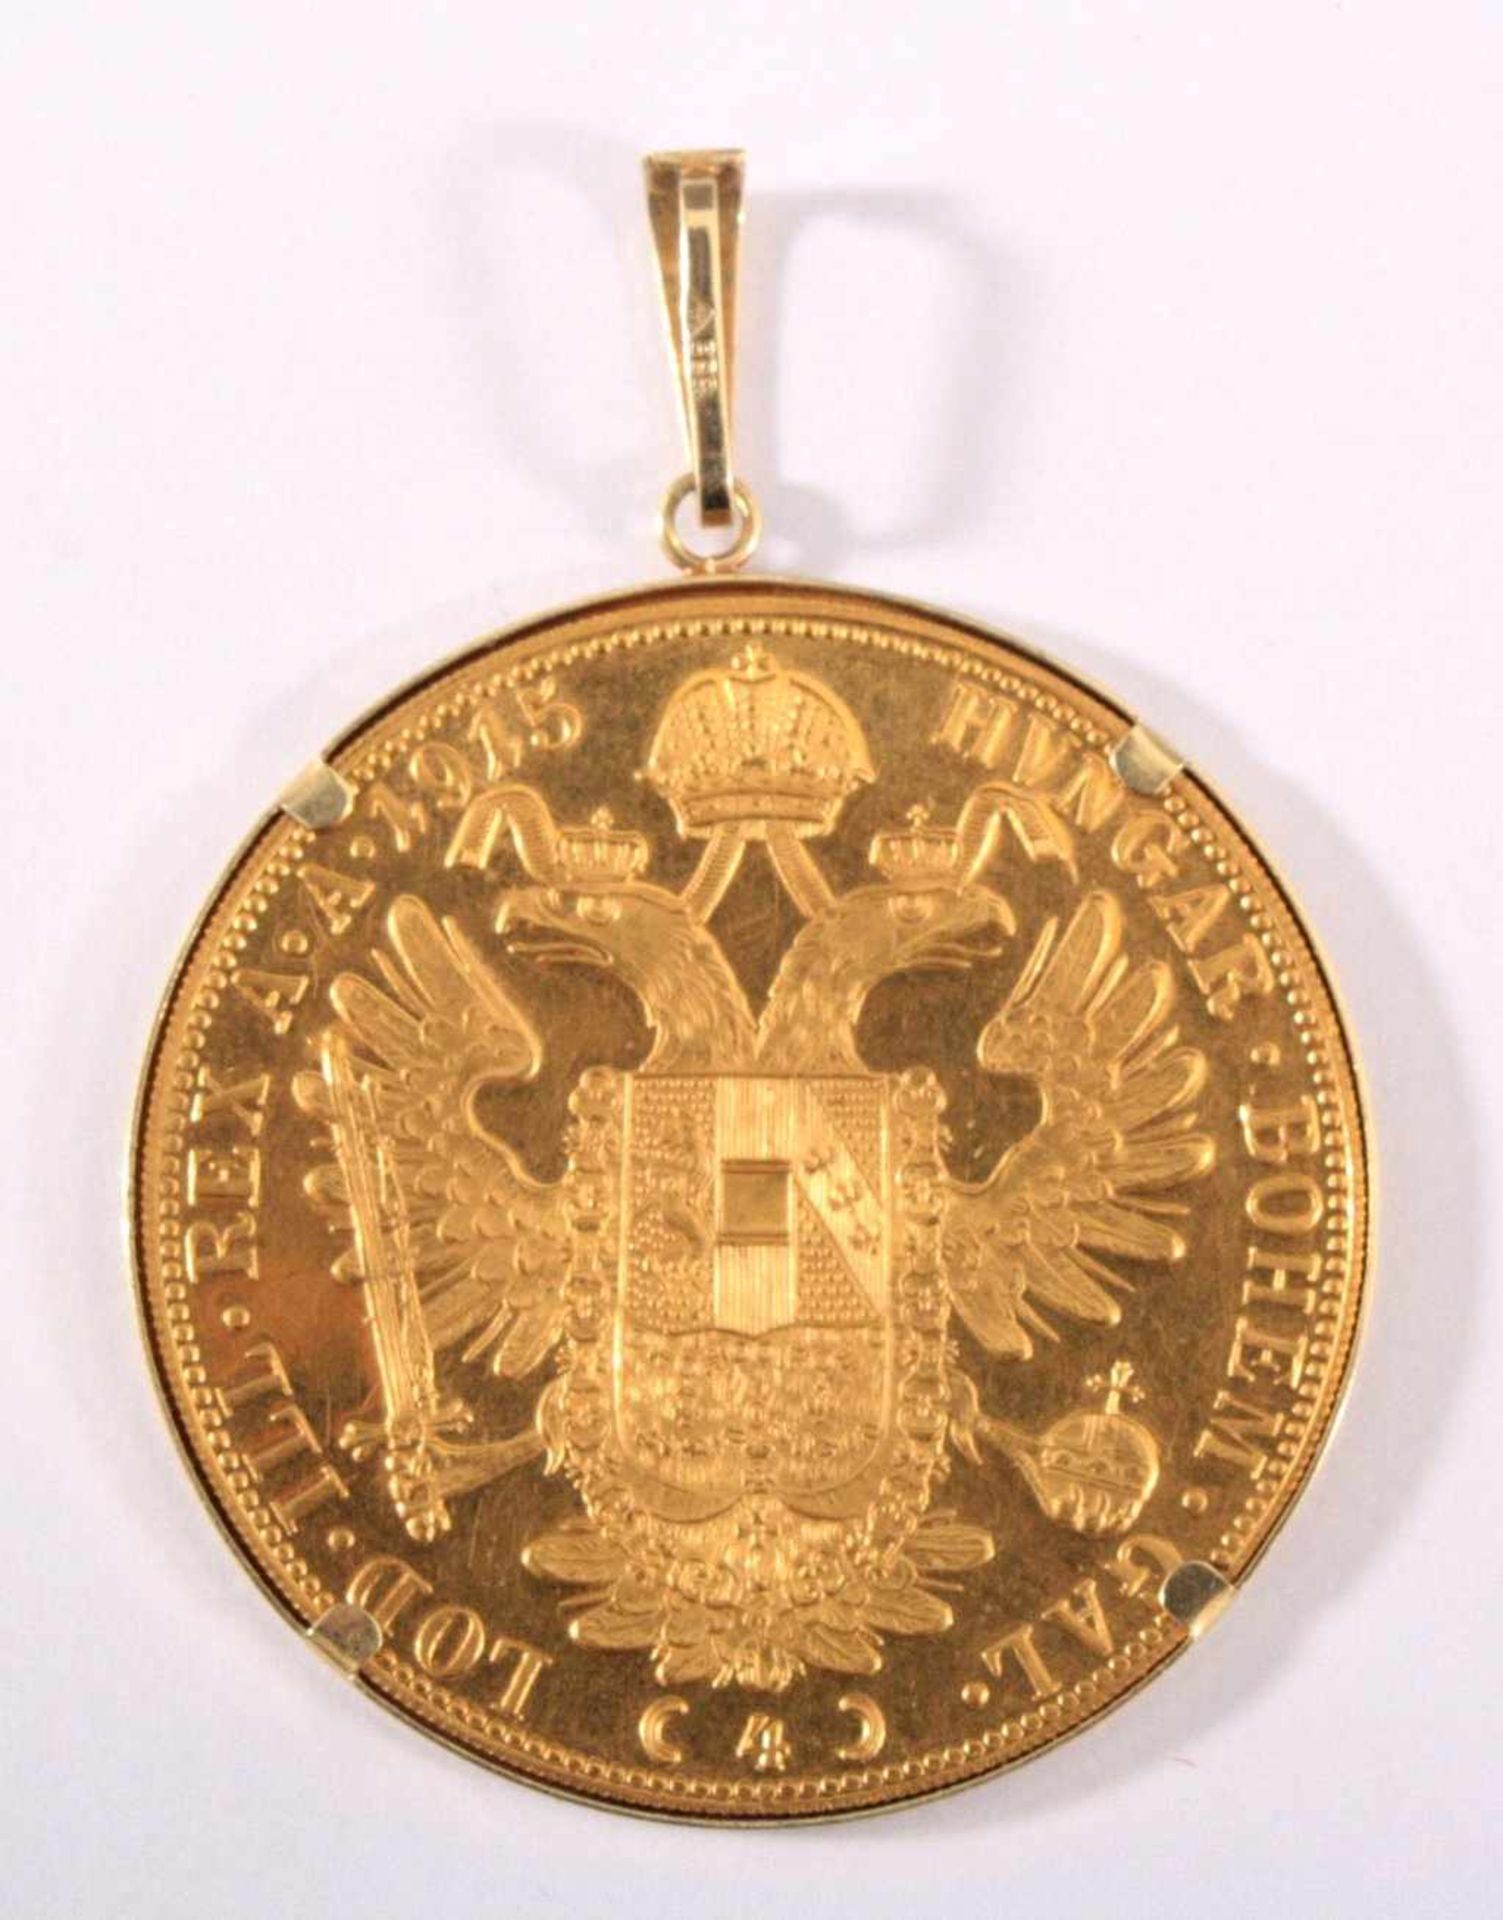 4 Dukaten Österreich Kaiser Franz Joseph I.986 Gold, Fassung aus 585 Gold, ca. 15,6 g - Bild 2 aus 2